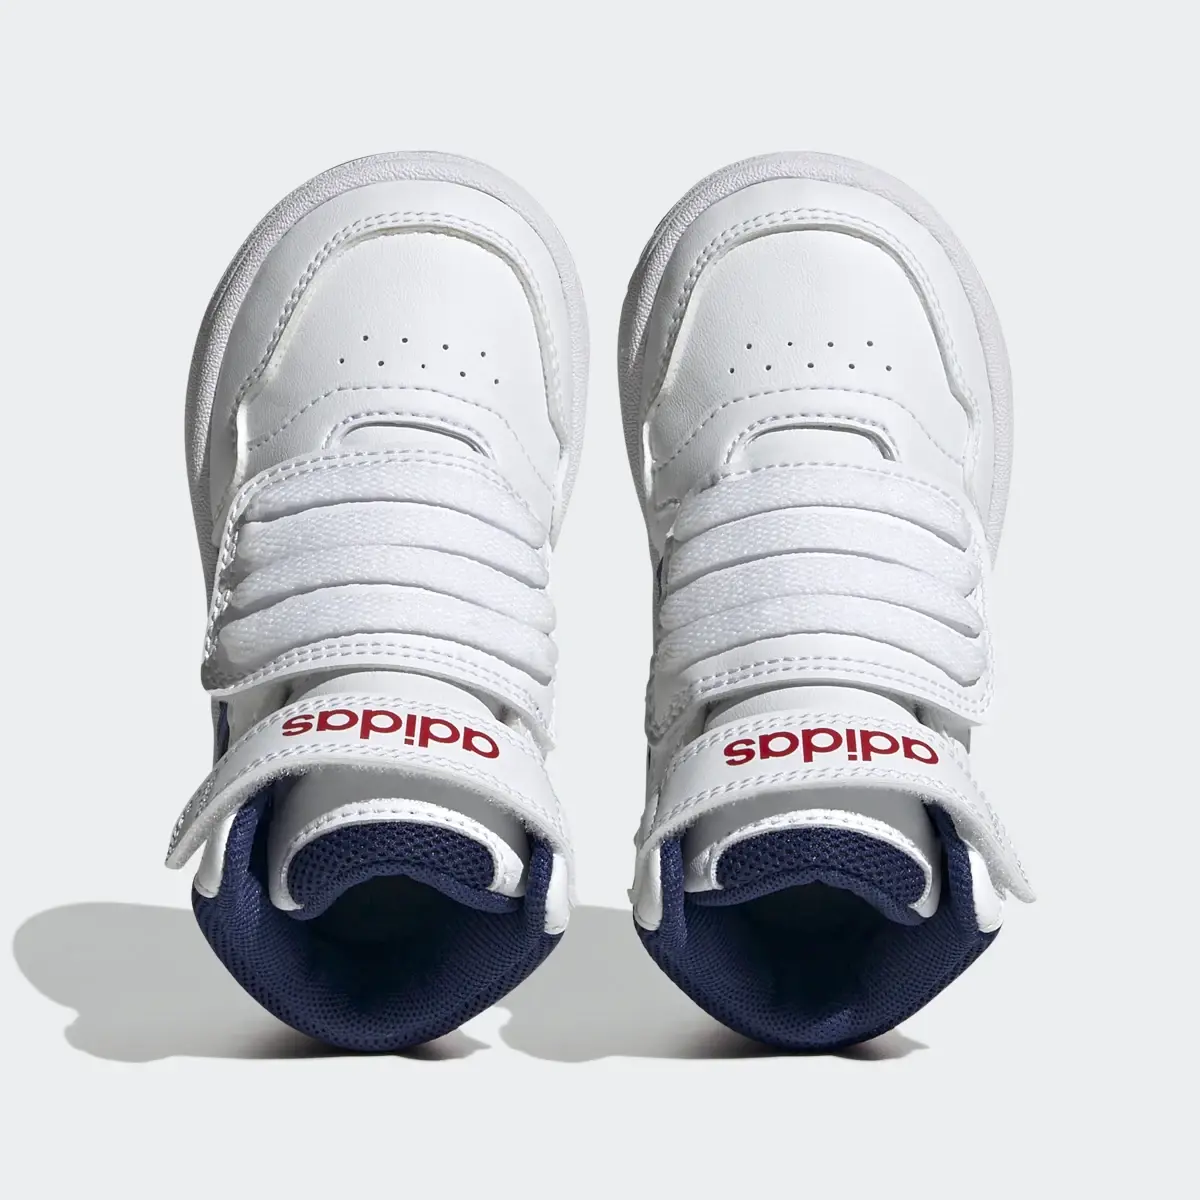 Adidas Scarpe Hoops Mid. 3